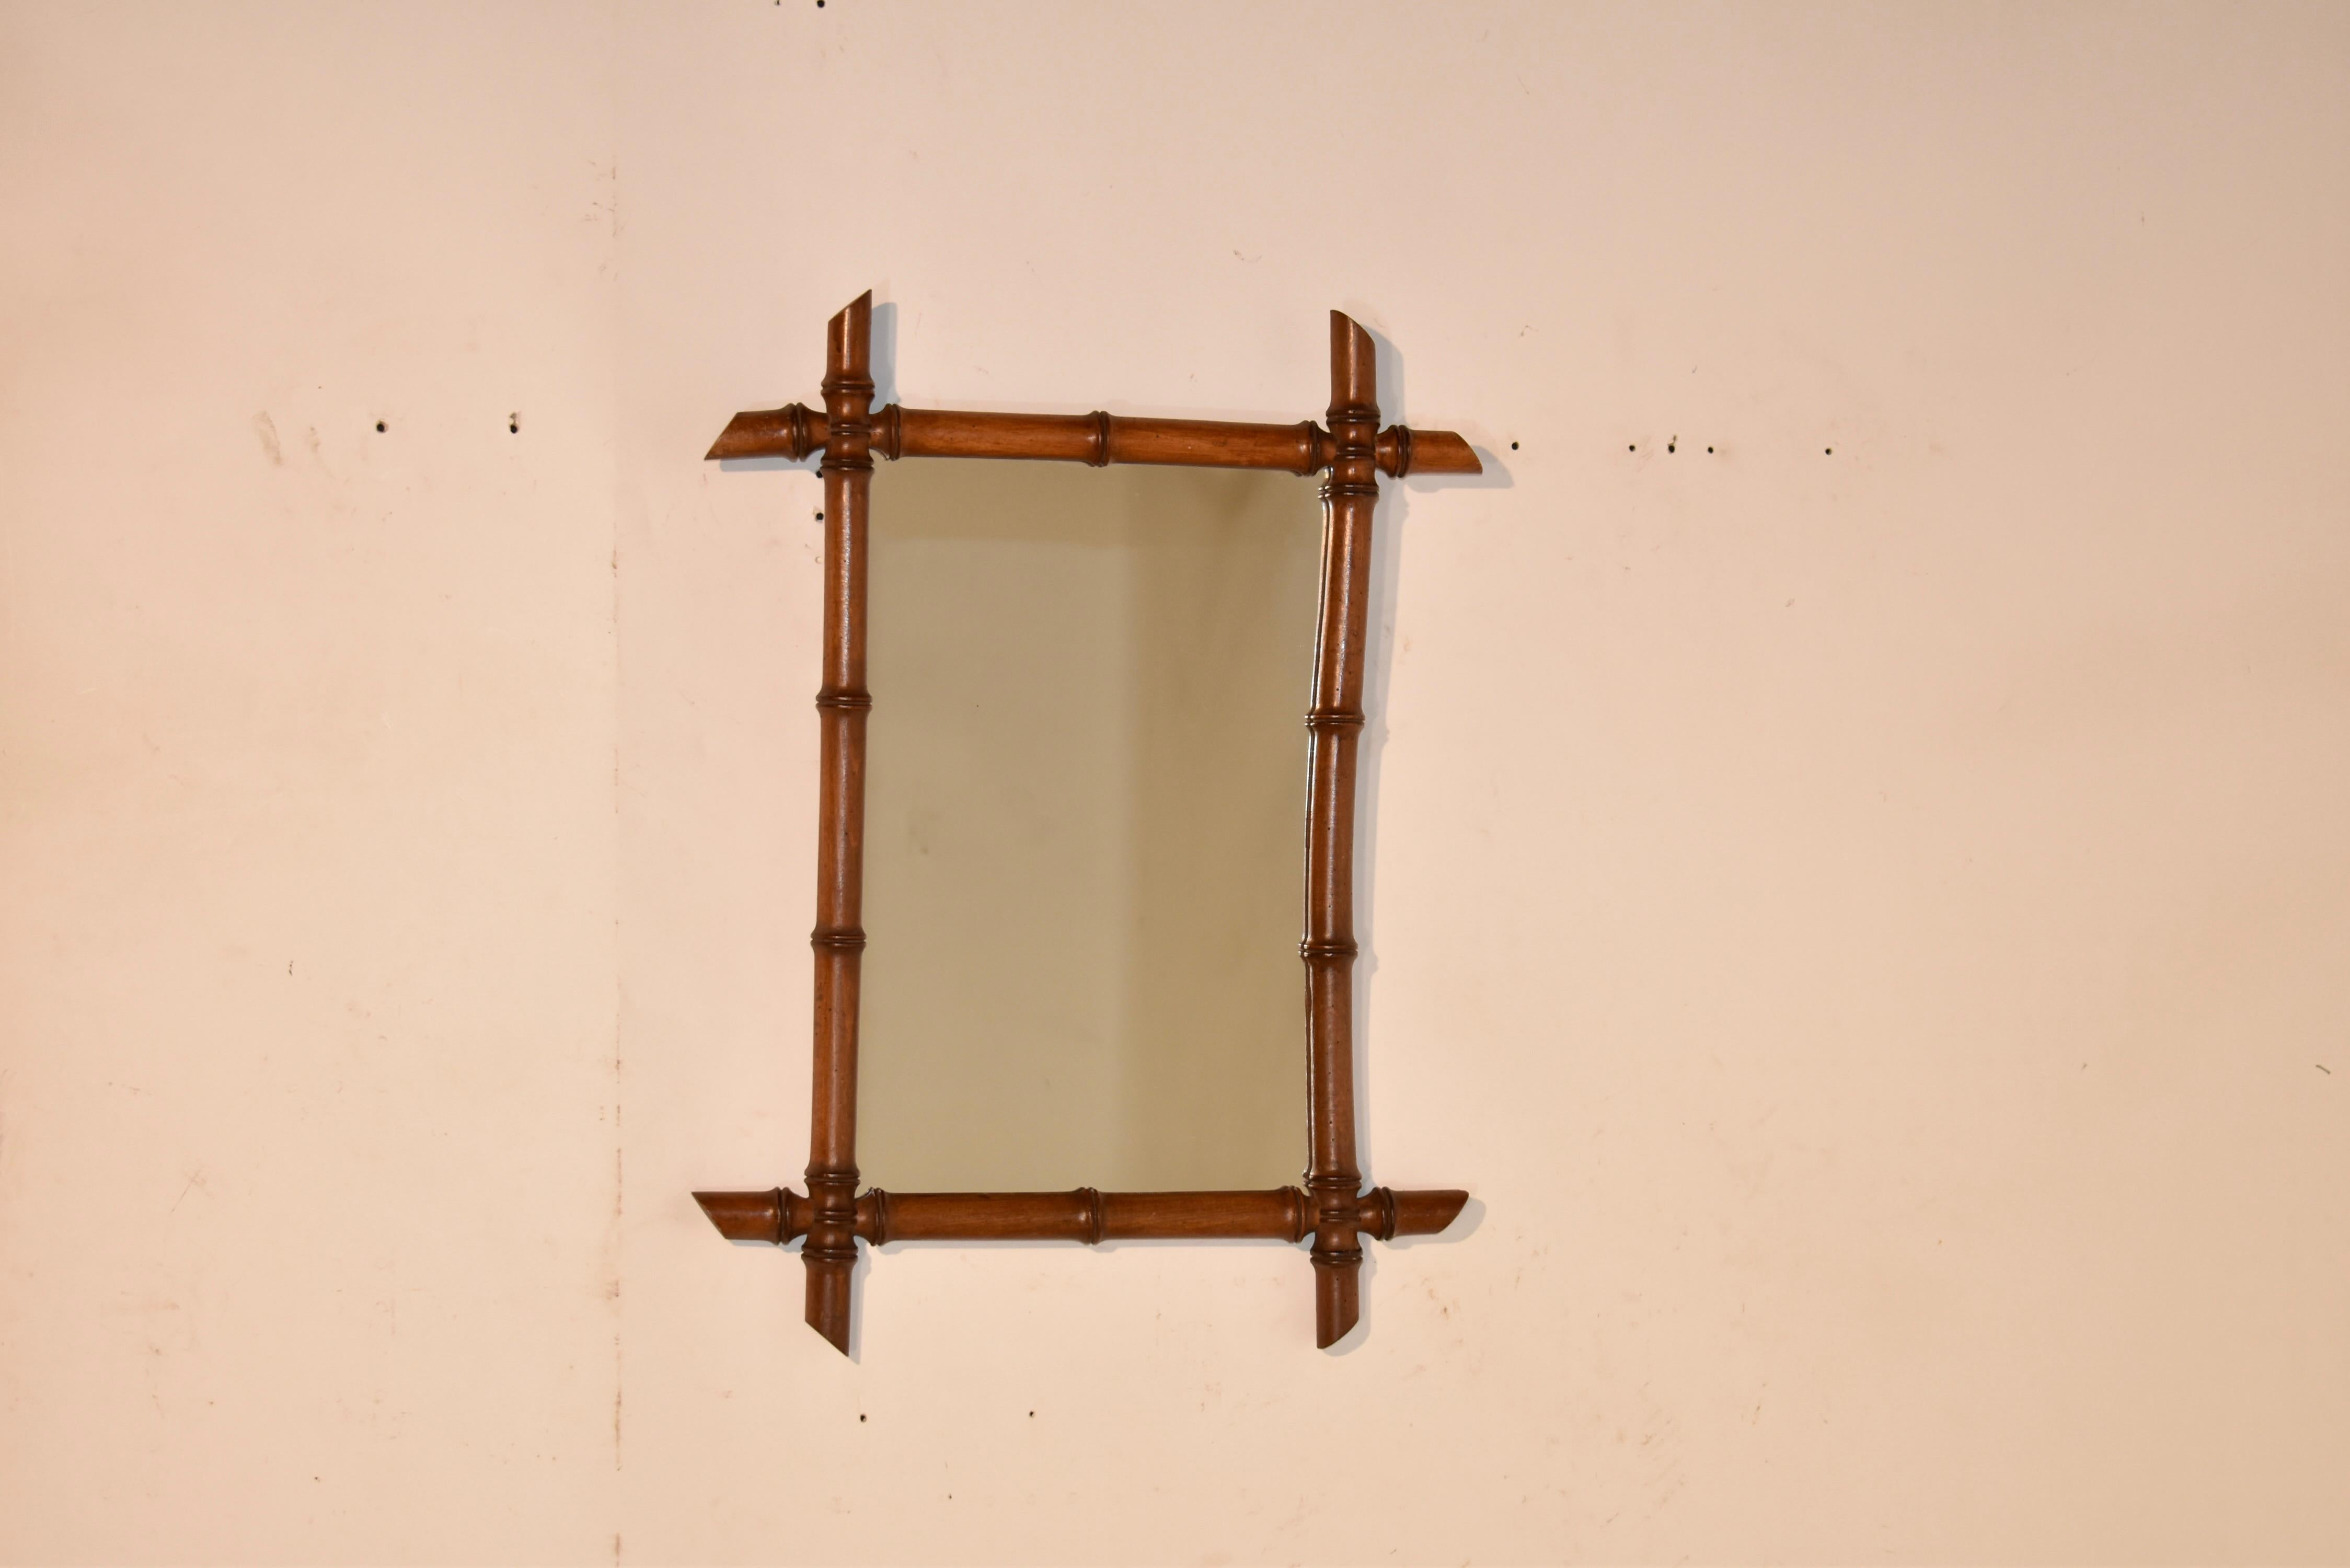 Miroir mural en faux bambou de la fin du 19e siècle en France.  Le cadre est tourné en cerisier et ressemble à du bambou.  Le cadre entoure un miroir.  Ces miroirs s'intègrent parfaitement à tous les styles de décoration.